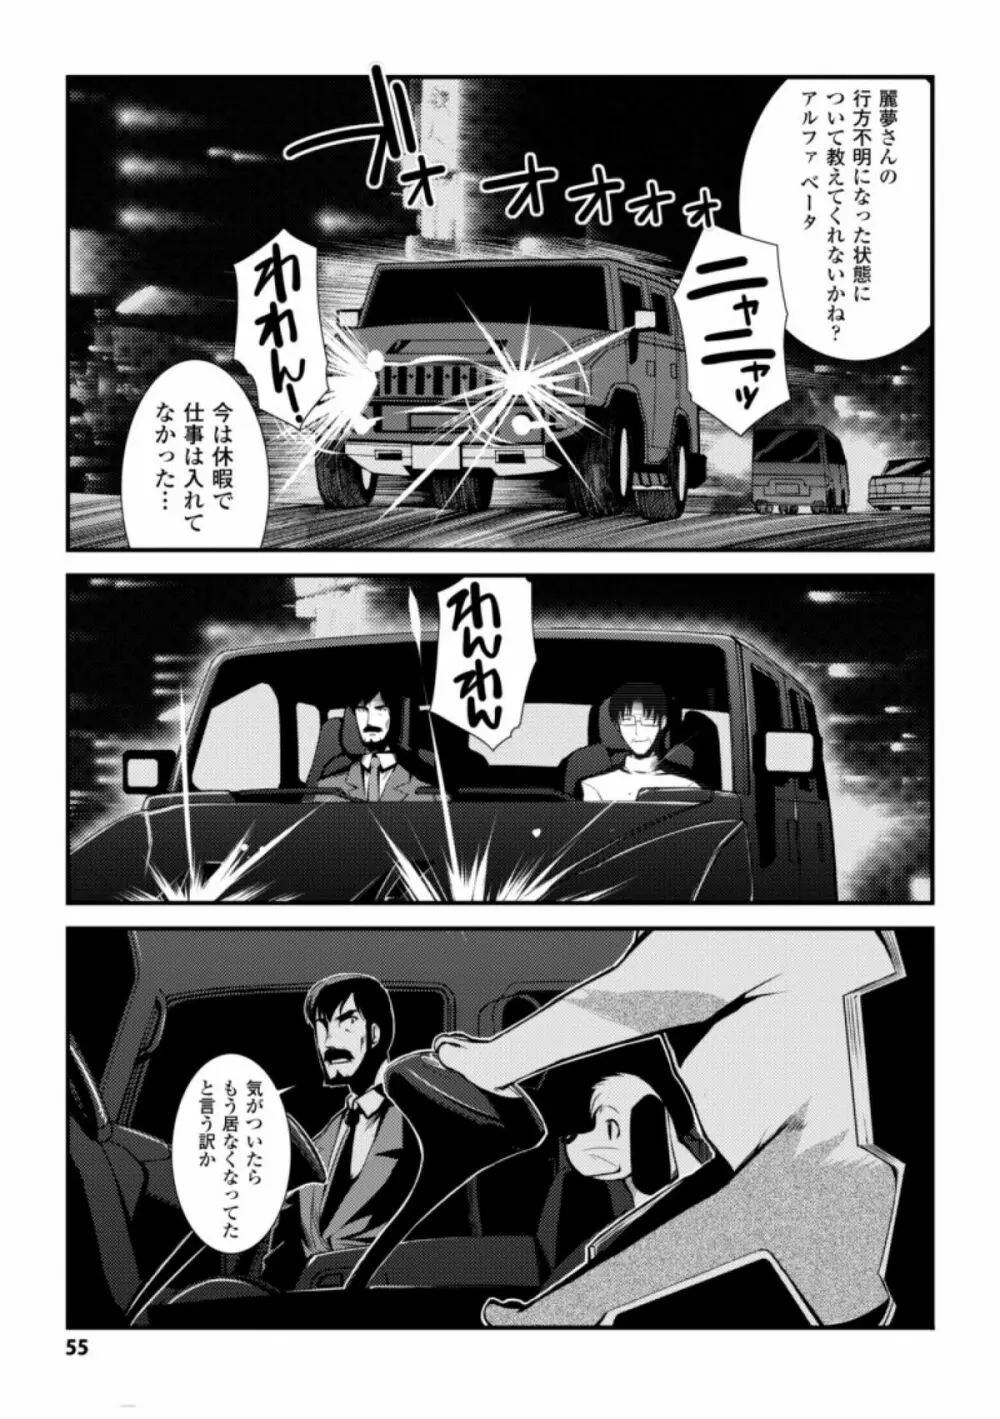 ドリームハンター麗夢XX -蒼の機関騎士- 55ページ